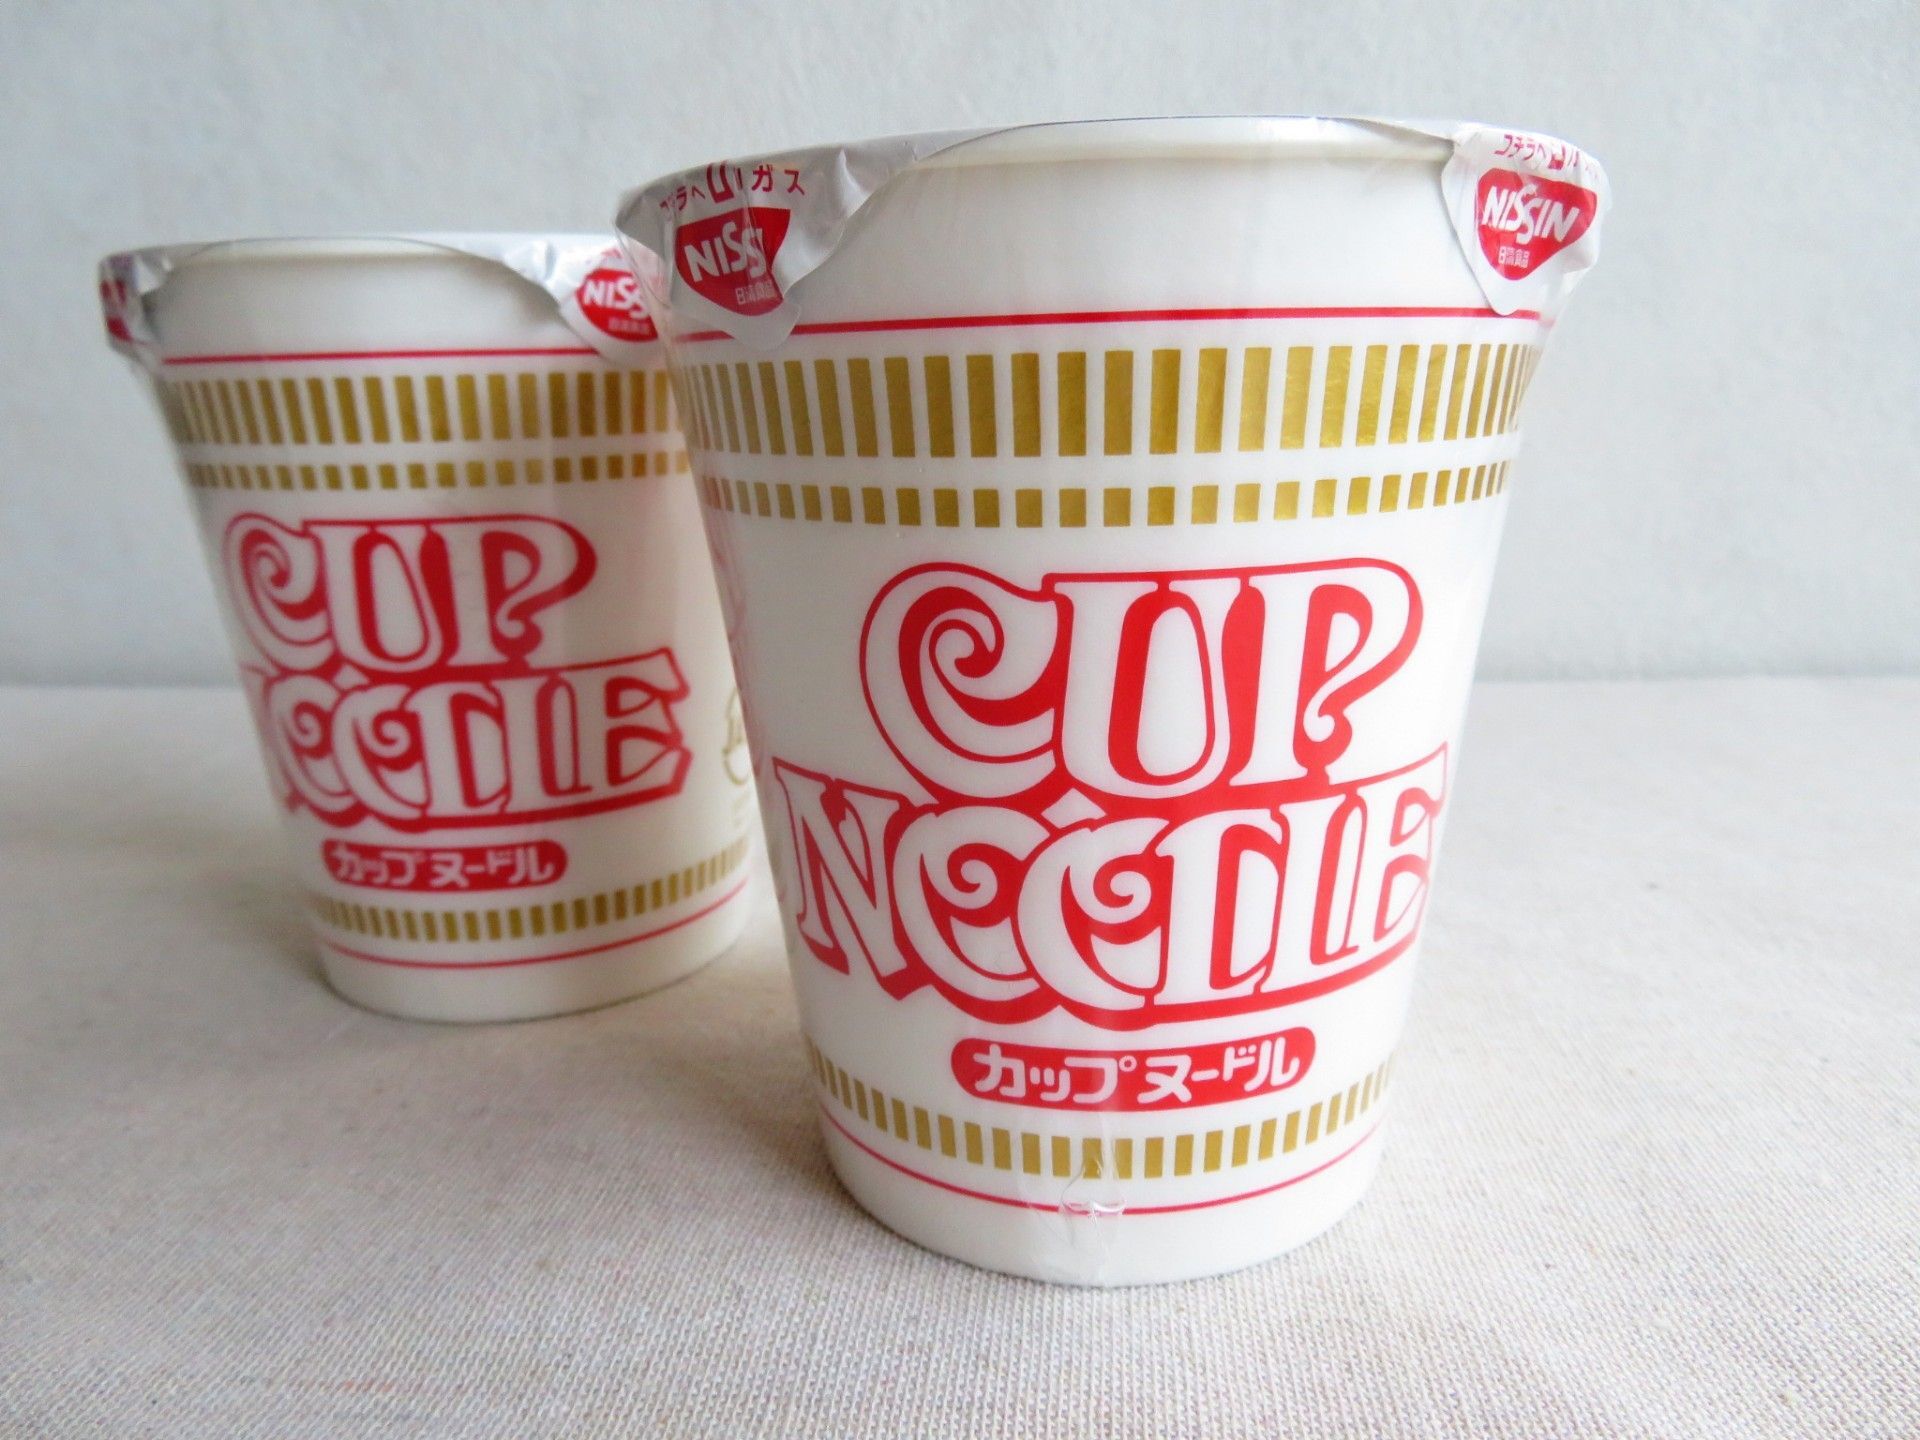 【カップ麺の残ったスープ活用法】メーカー公式の簡単アレンジレシピを作ってみたら…？